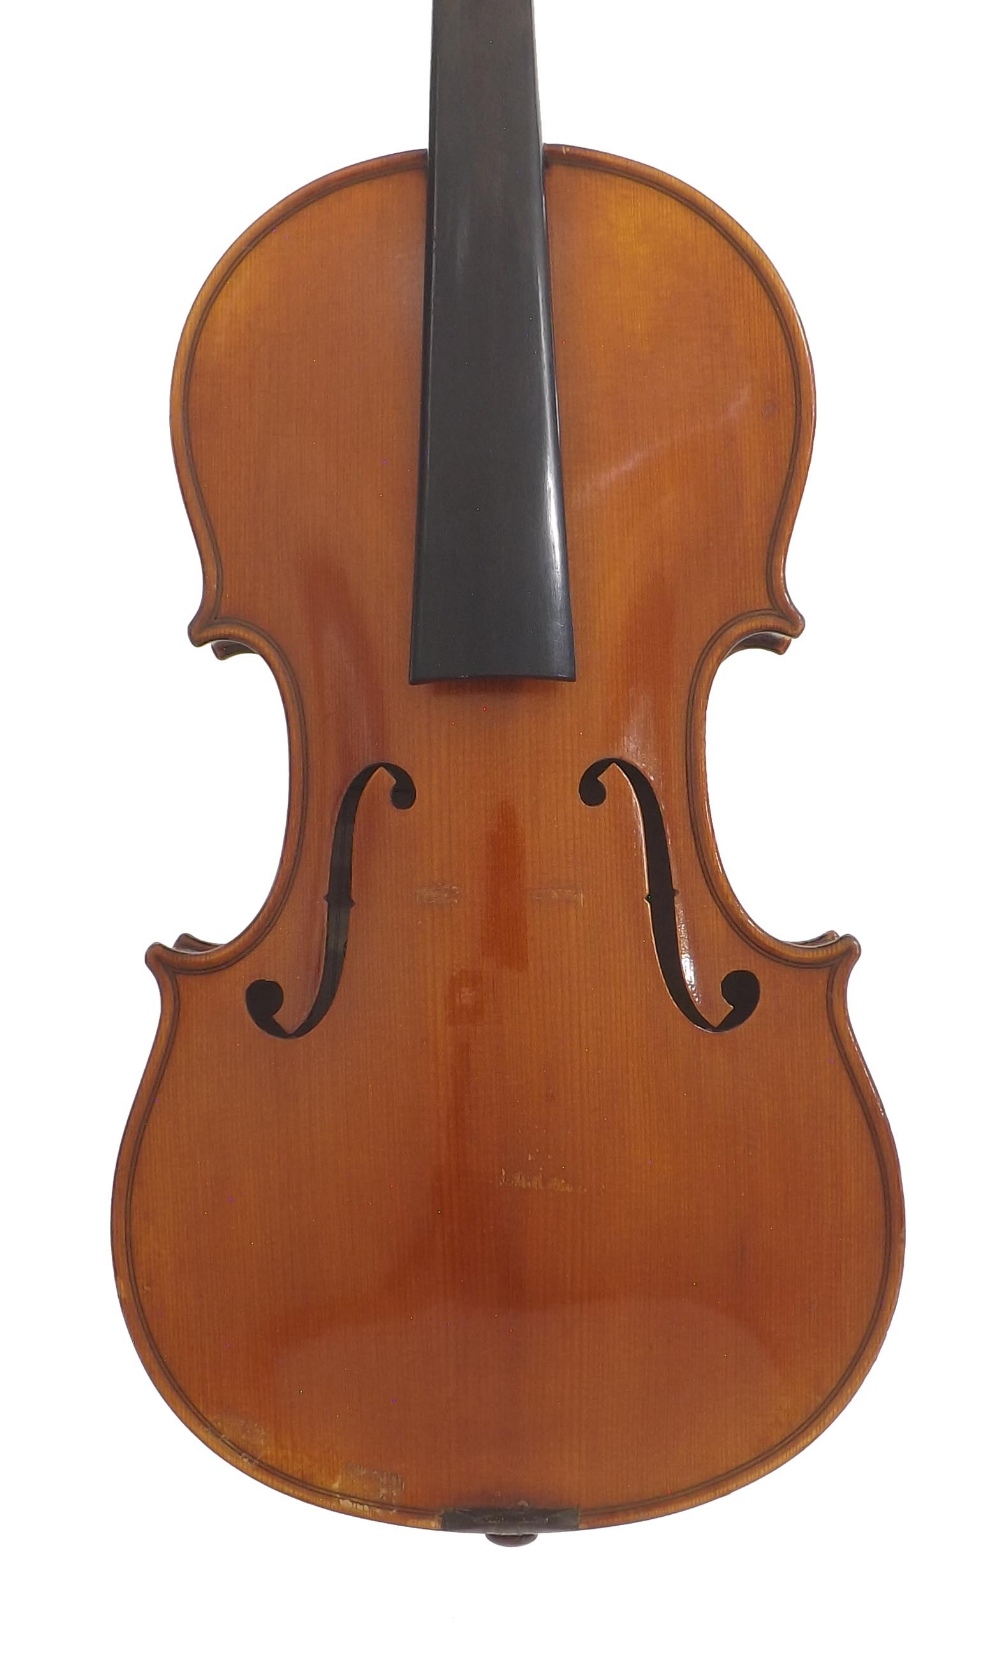 French violin by and labelled Antonio Lorenzi, Di San Raffaelo, no. 3125, also signed on the label